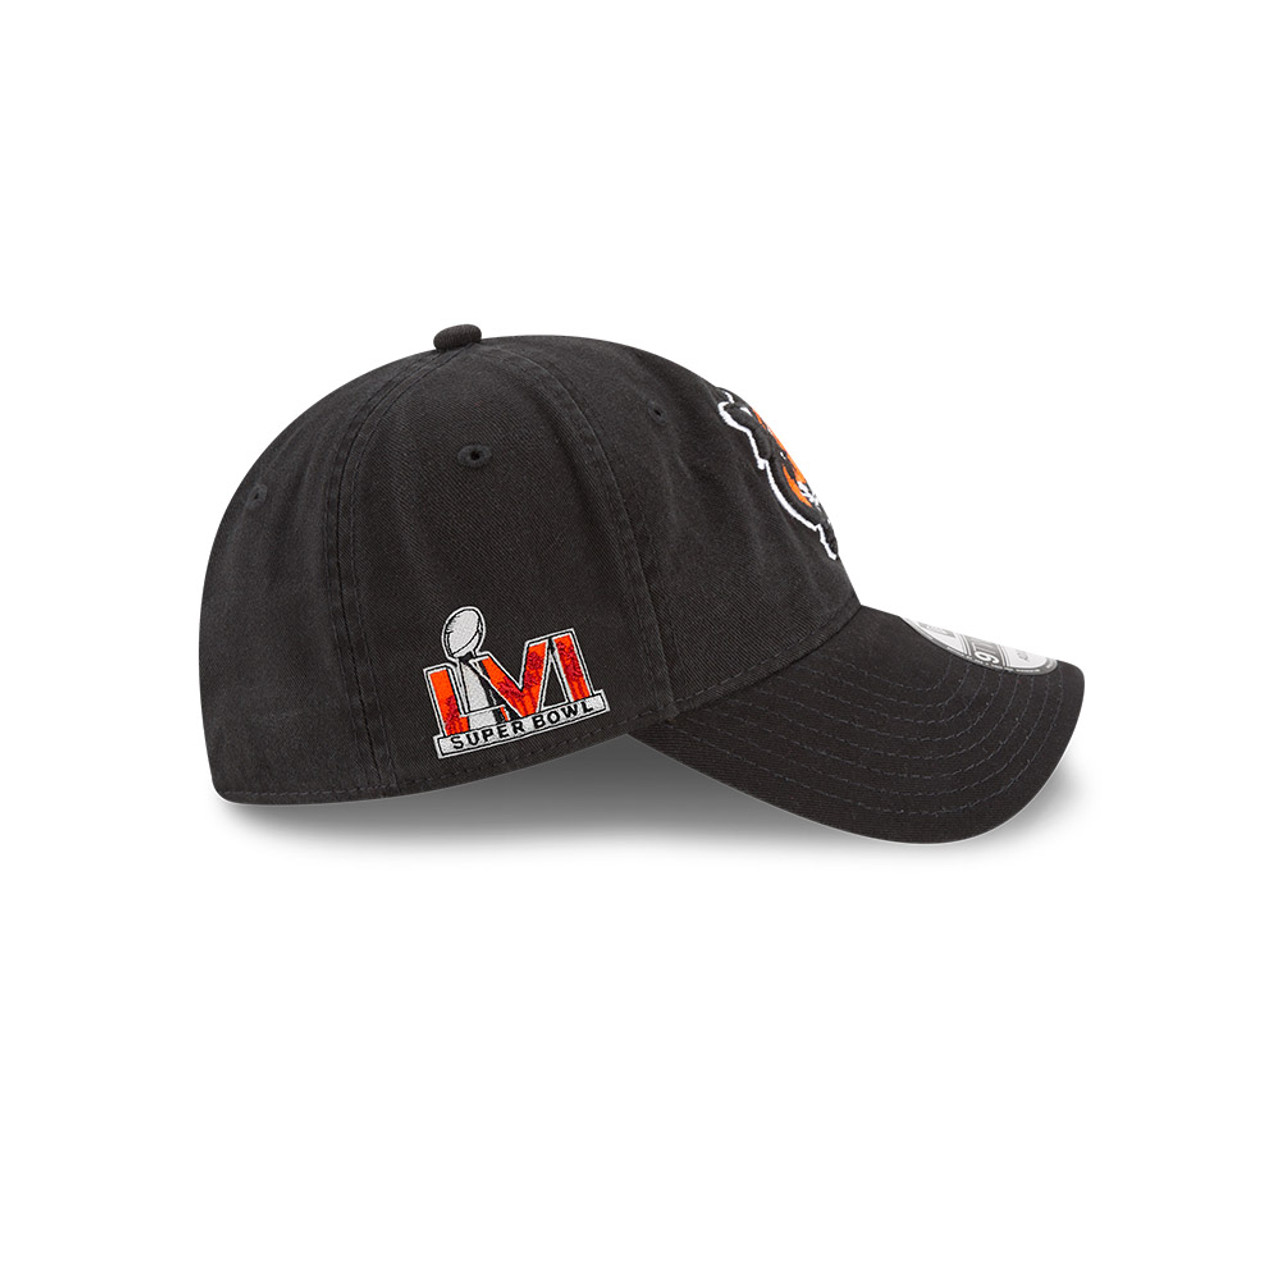 Cincinnati Bengals 59Fifty New Era Super Bowl LVI Hat Black/Orange